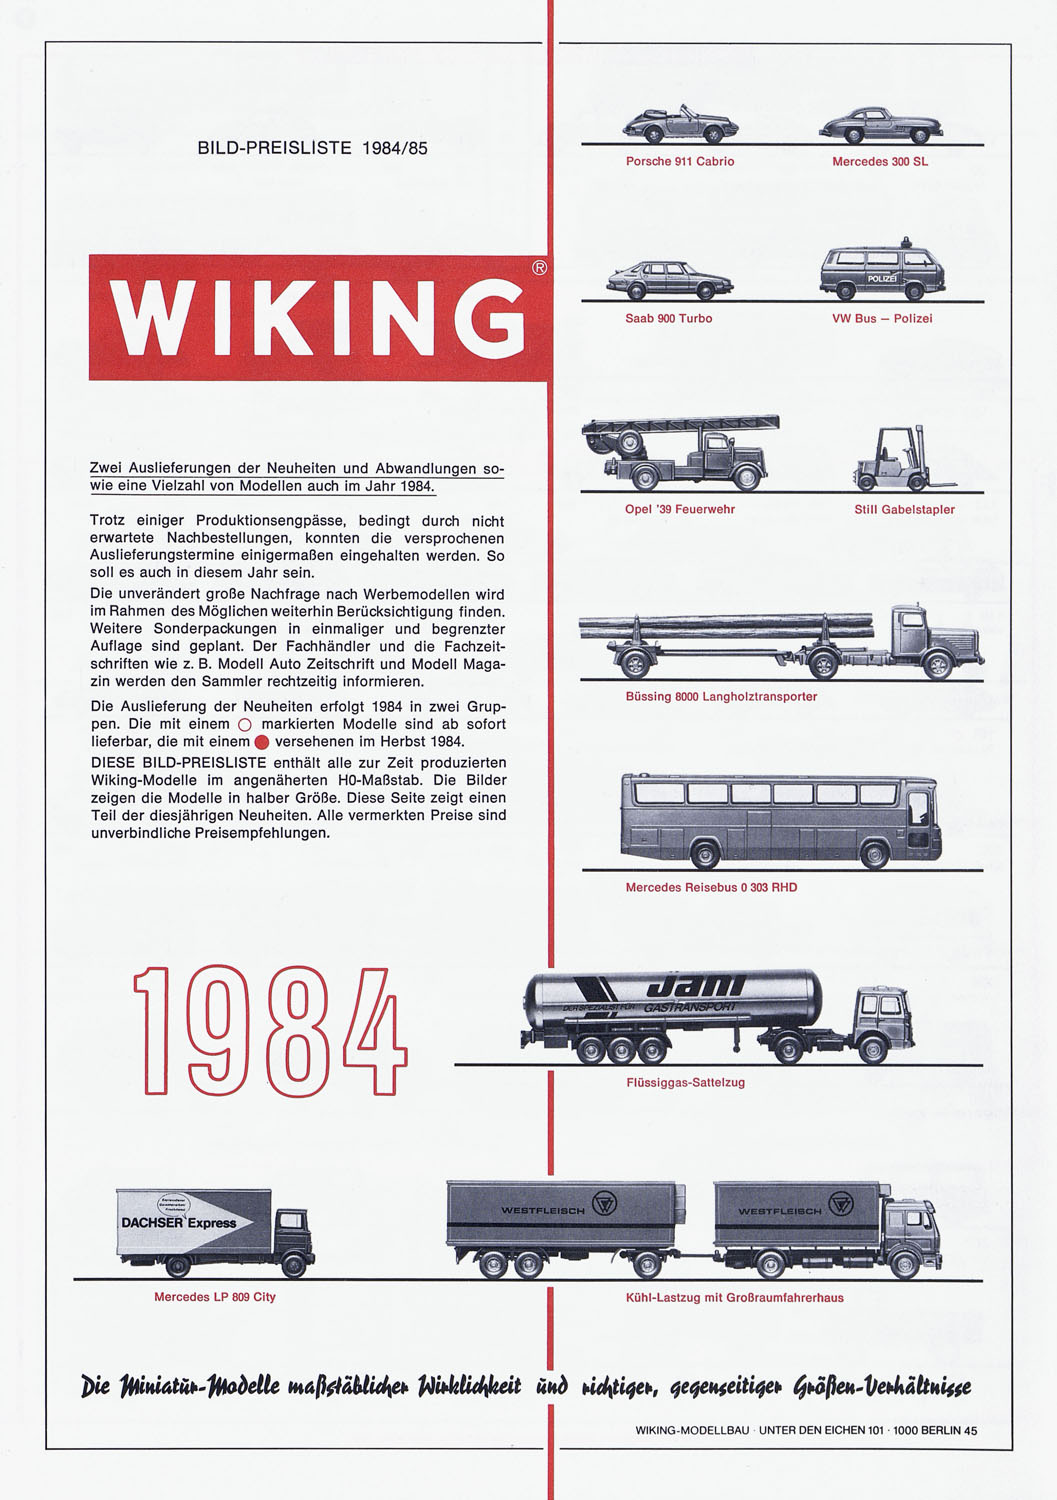 Wiking Bildpreisliste 1984-1985